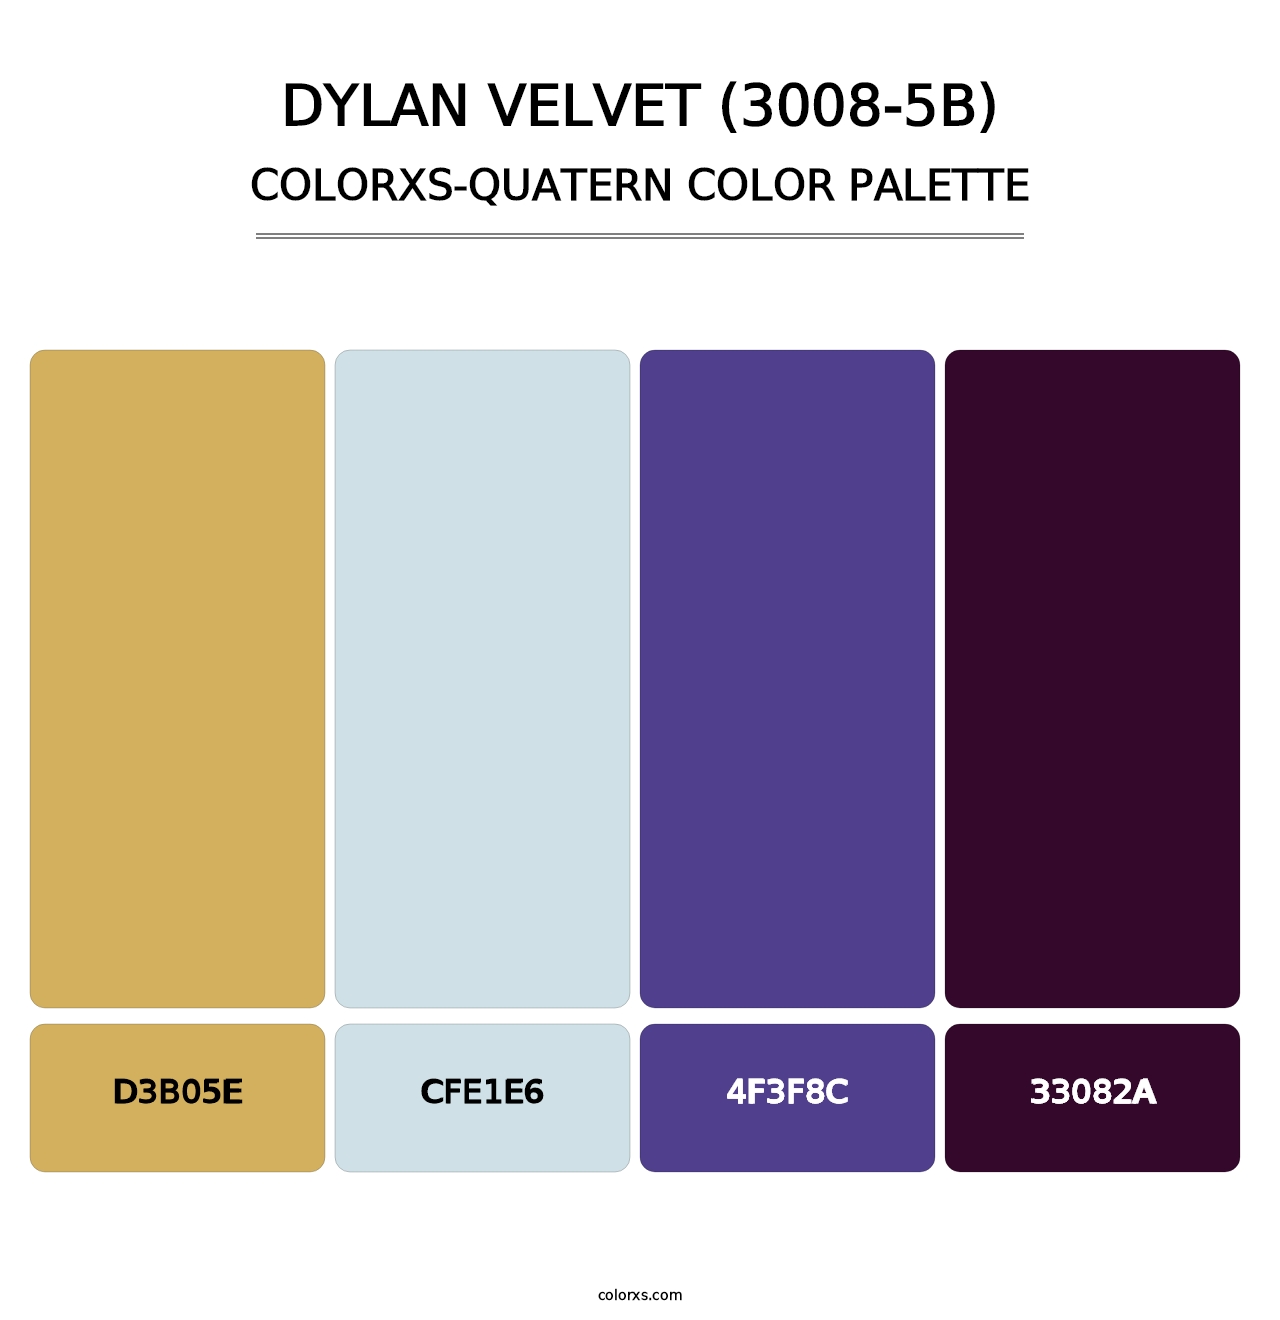 Dylan Velvet (3008-5B) - Colorxs Quatern Palette